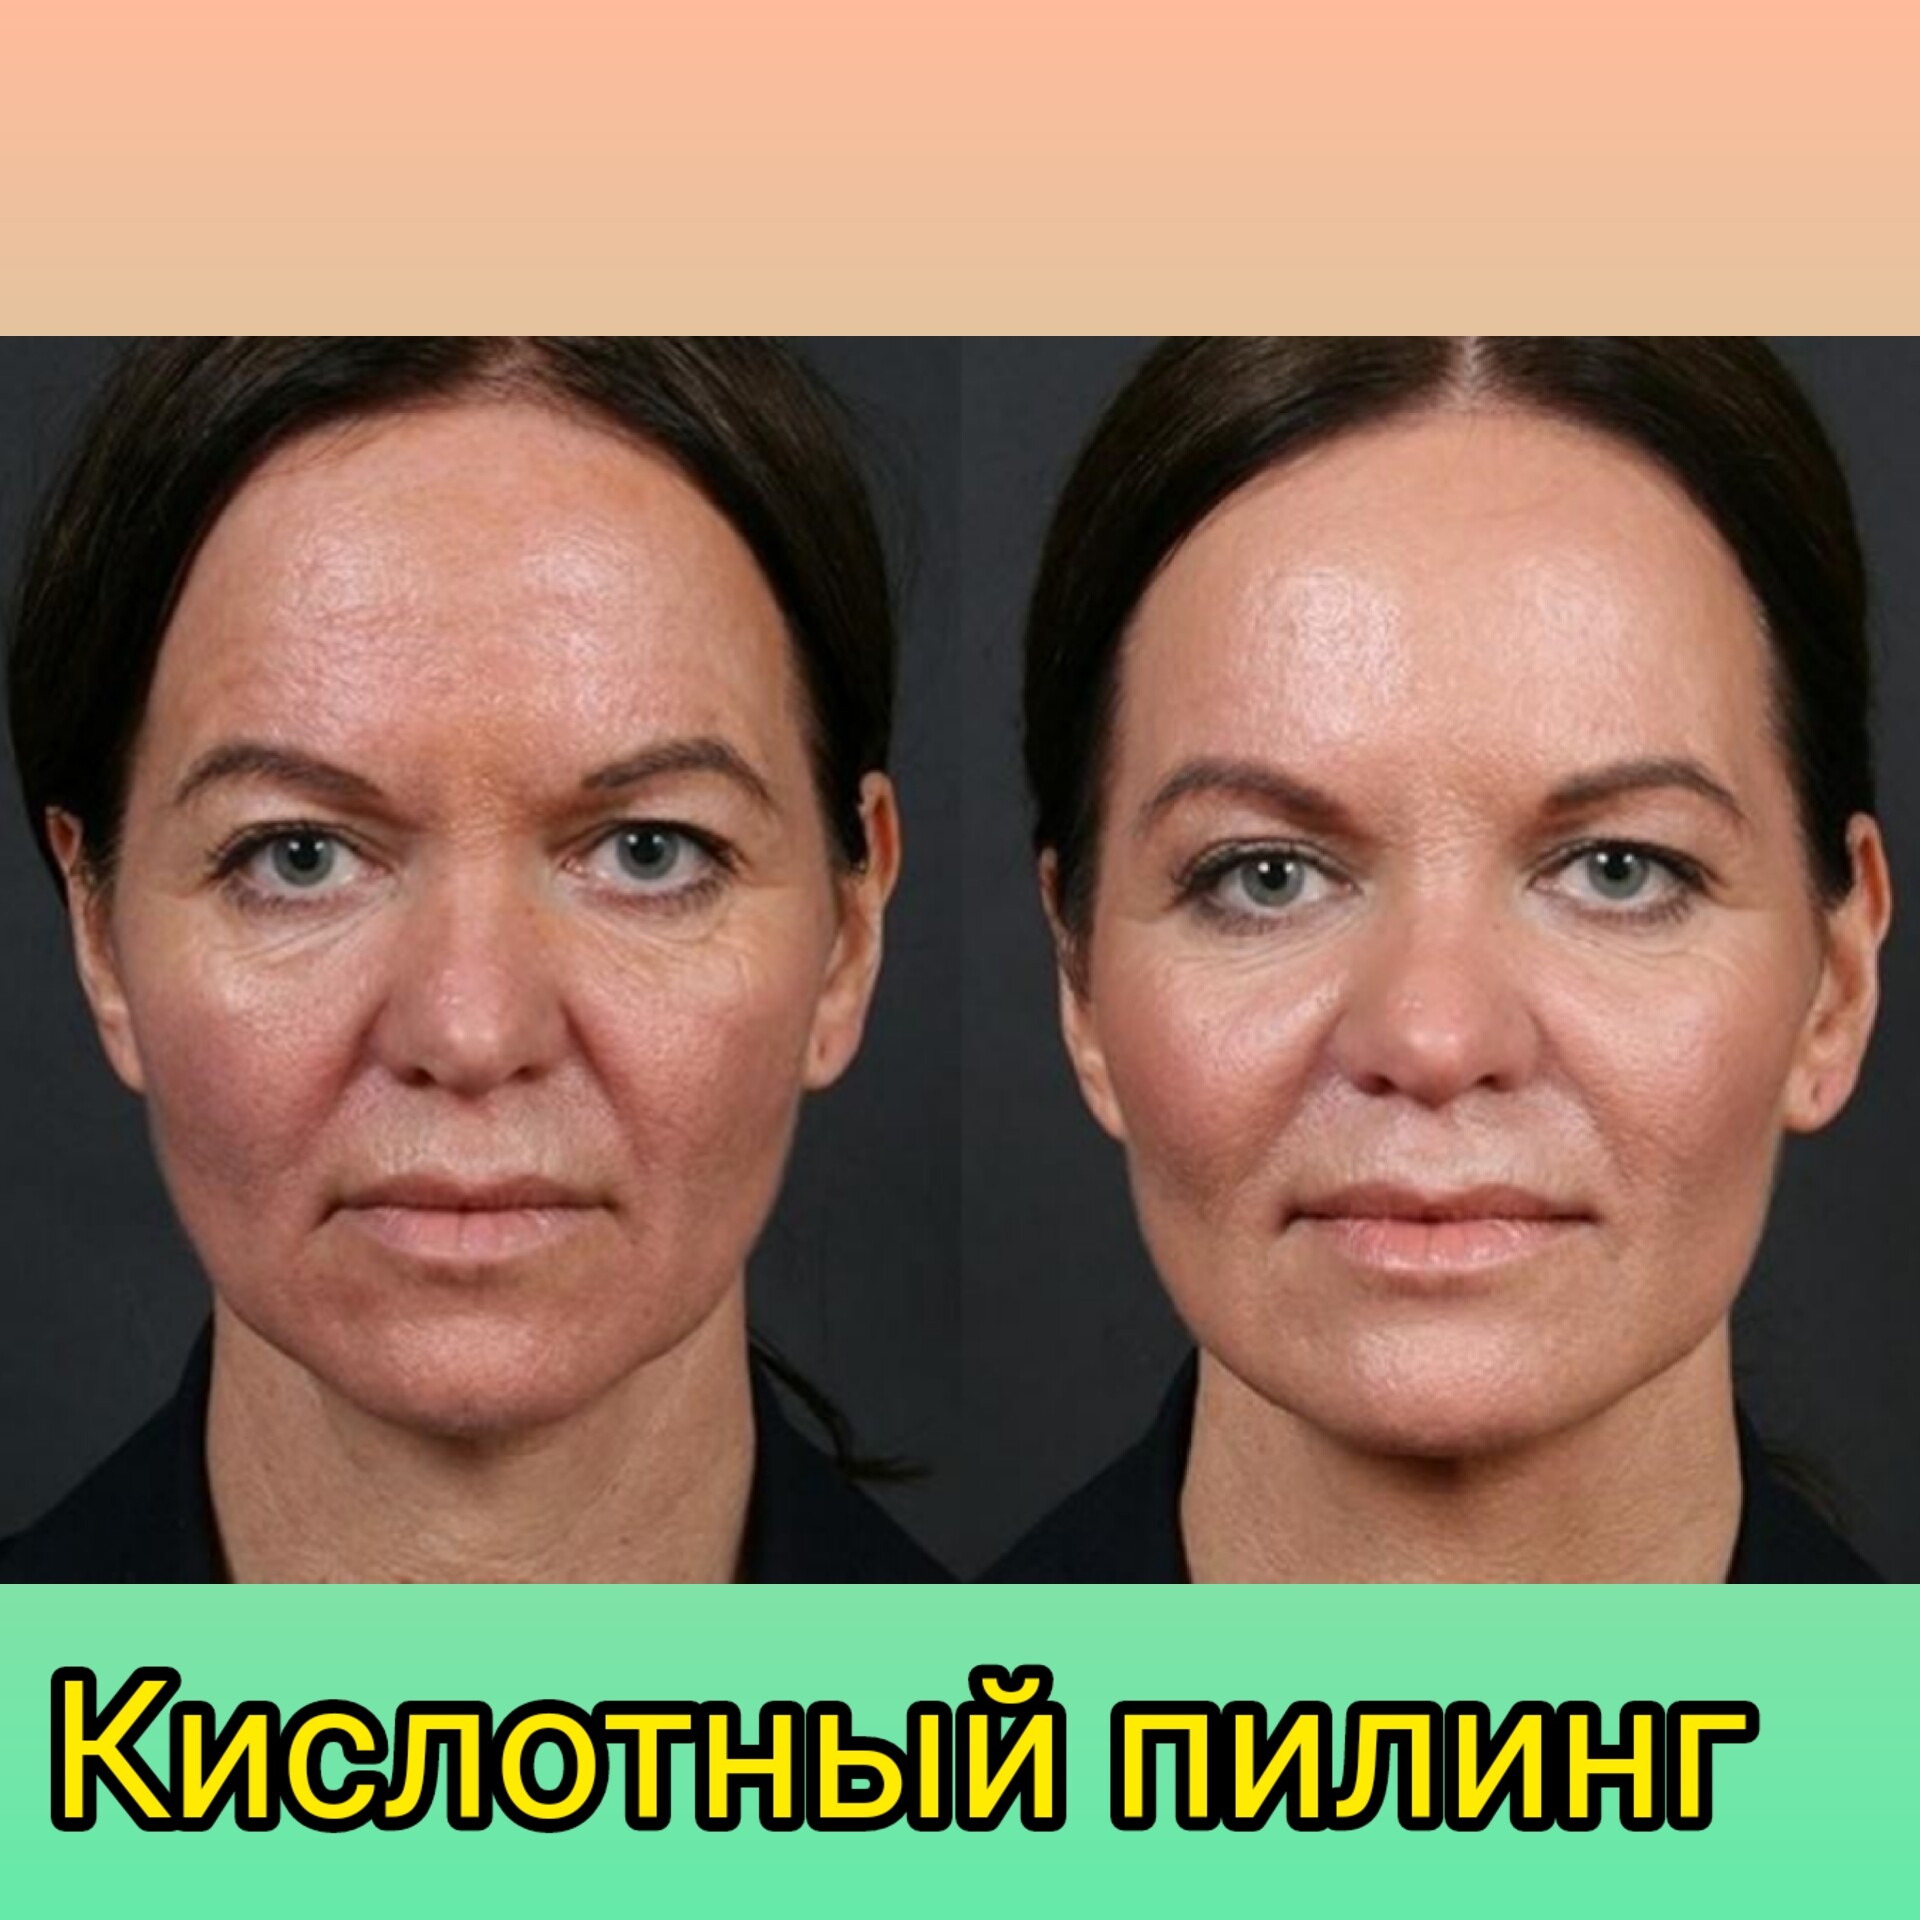 Эффект после лечения. ТСА 20 пилинг. Кислотный пилинг для лица до и после.